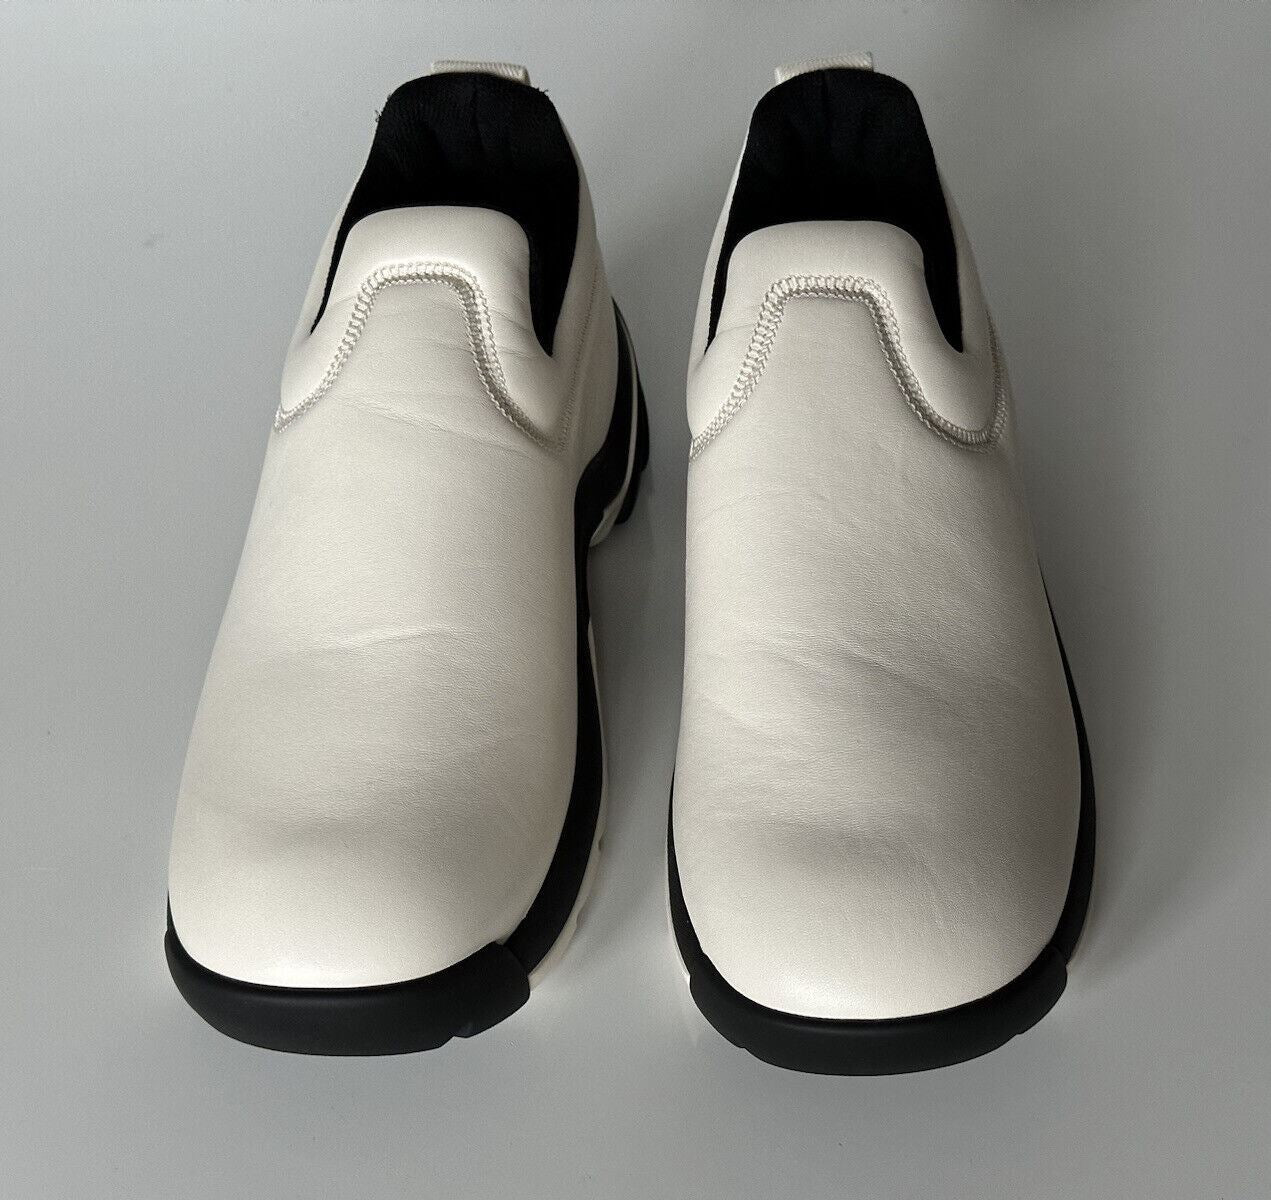 Мужские кроссовки из кожи наппа нейтрального цвета Lagoon Bottega Veneta 890 долларов США 9, США 667069 